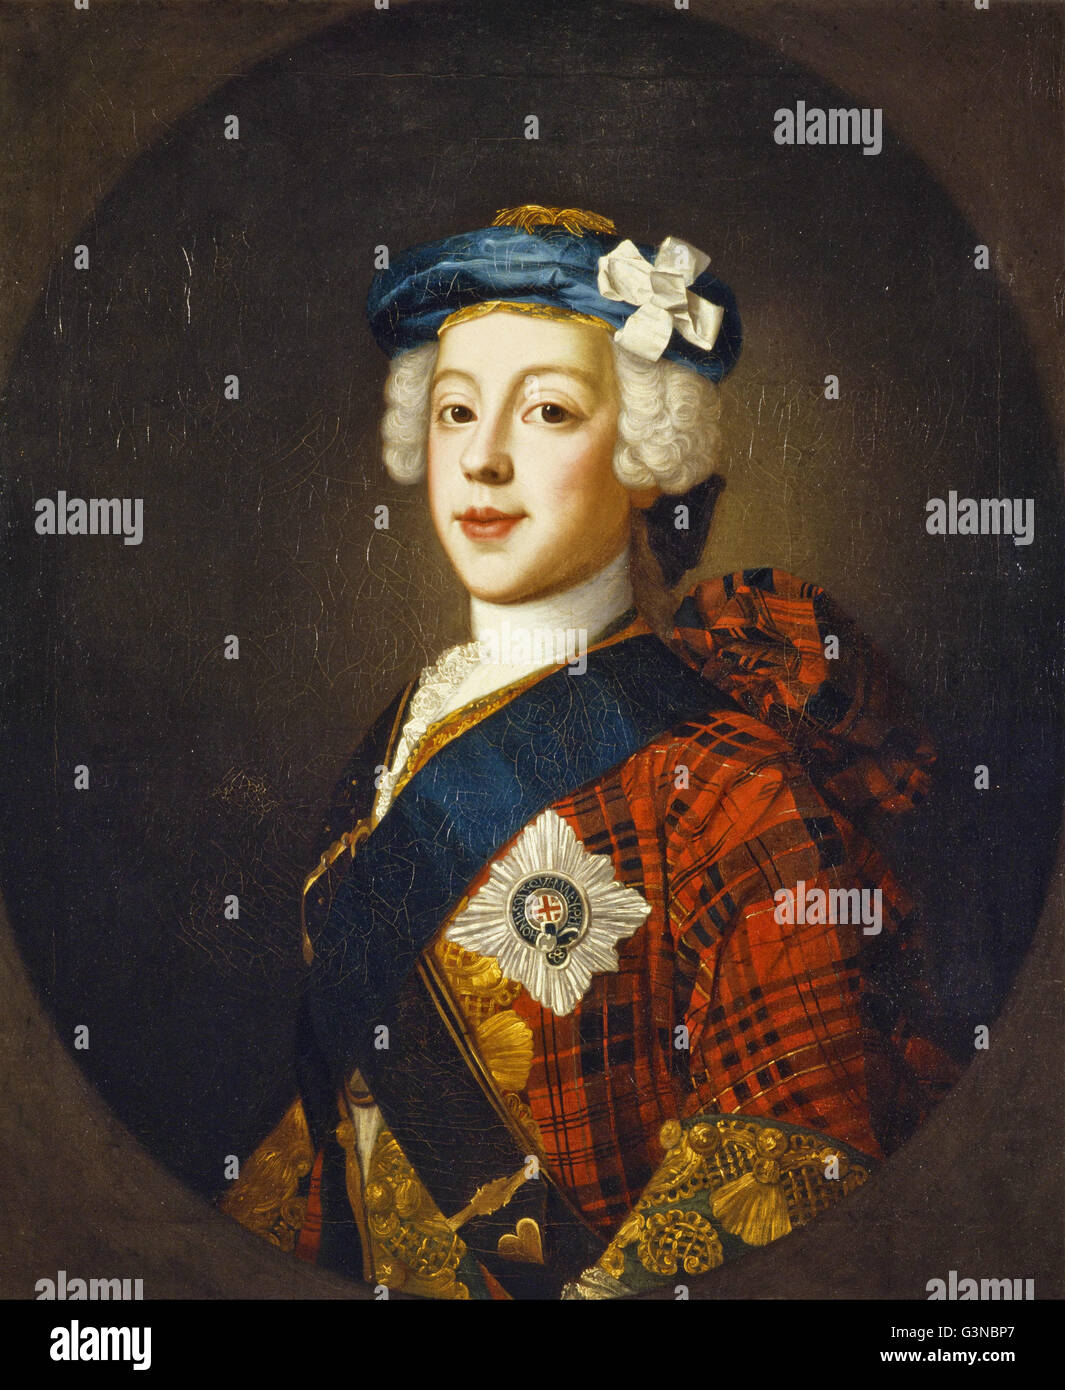 William Mosman - il Principe Charles Edward Stuart, 1720 - 1788. Il figlio maggiore del principe Giacomo Francesco Foto Stock